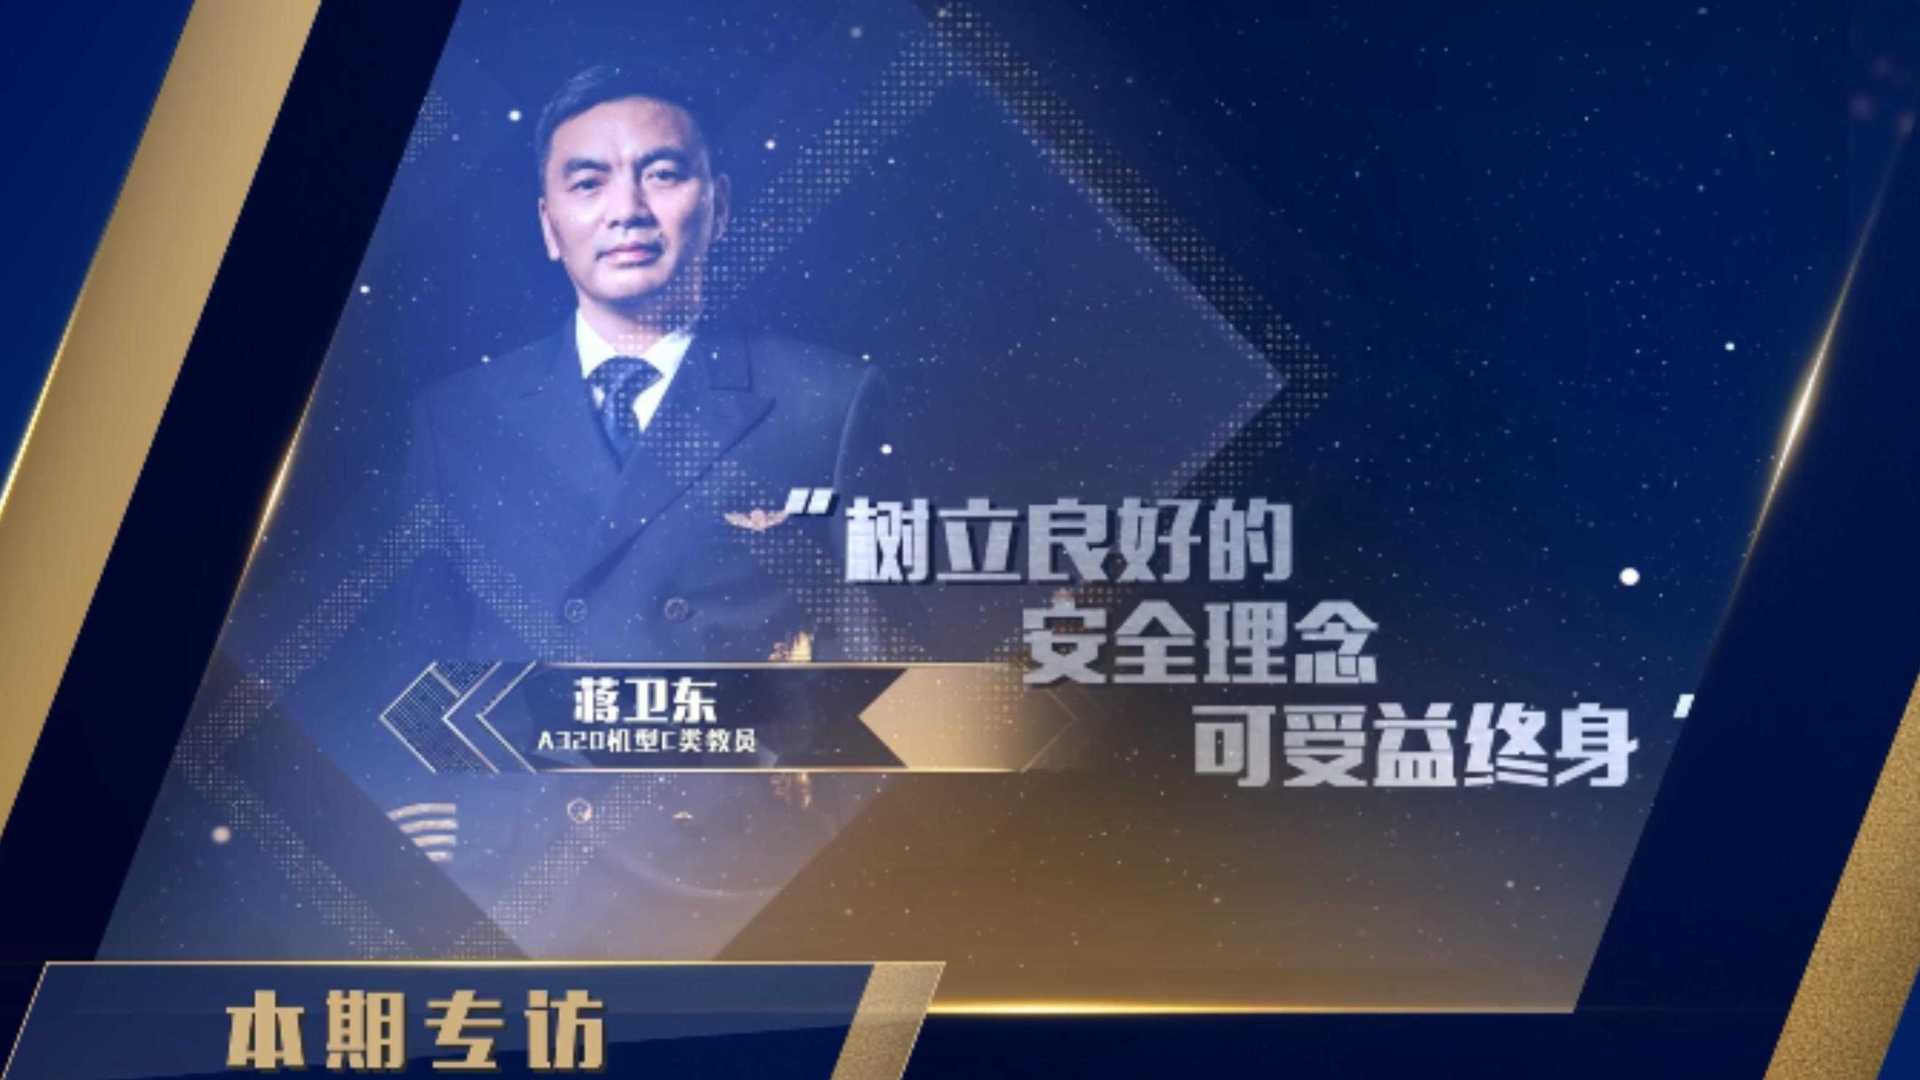 四川航空飞行部2020年度十佳教员-蒋卫东篇